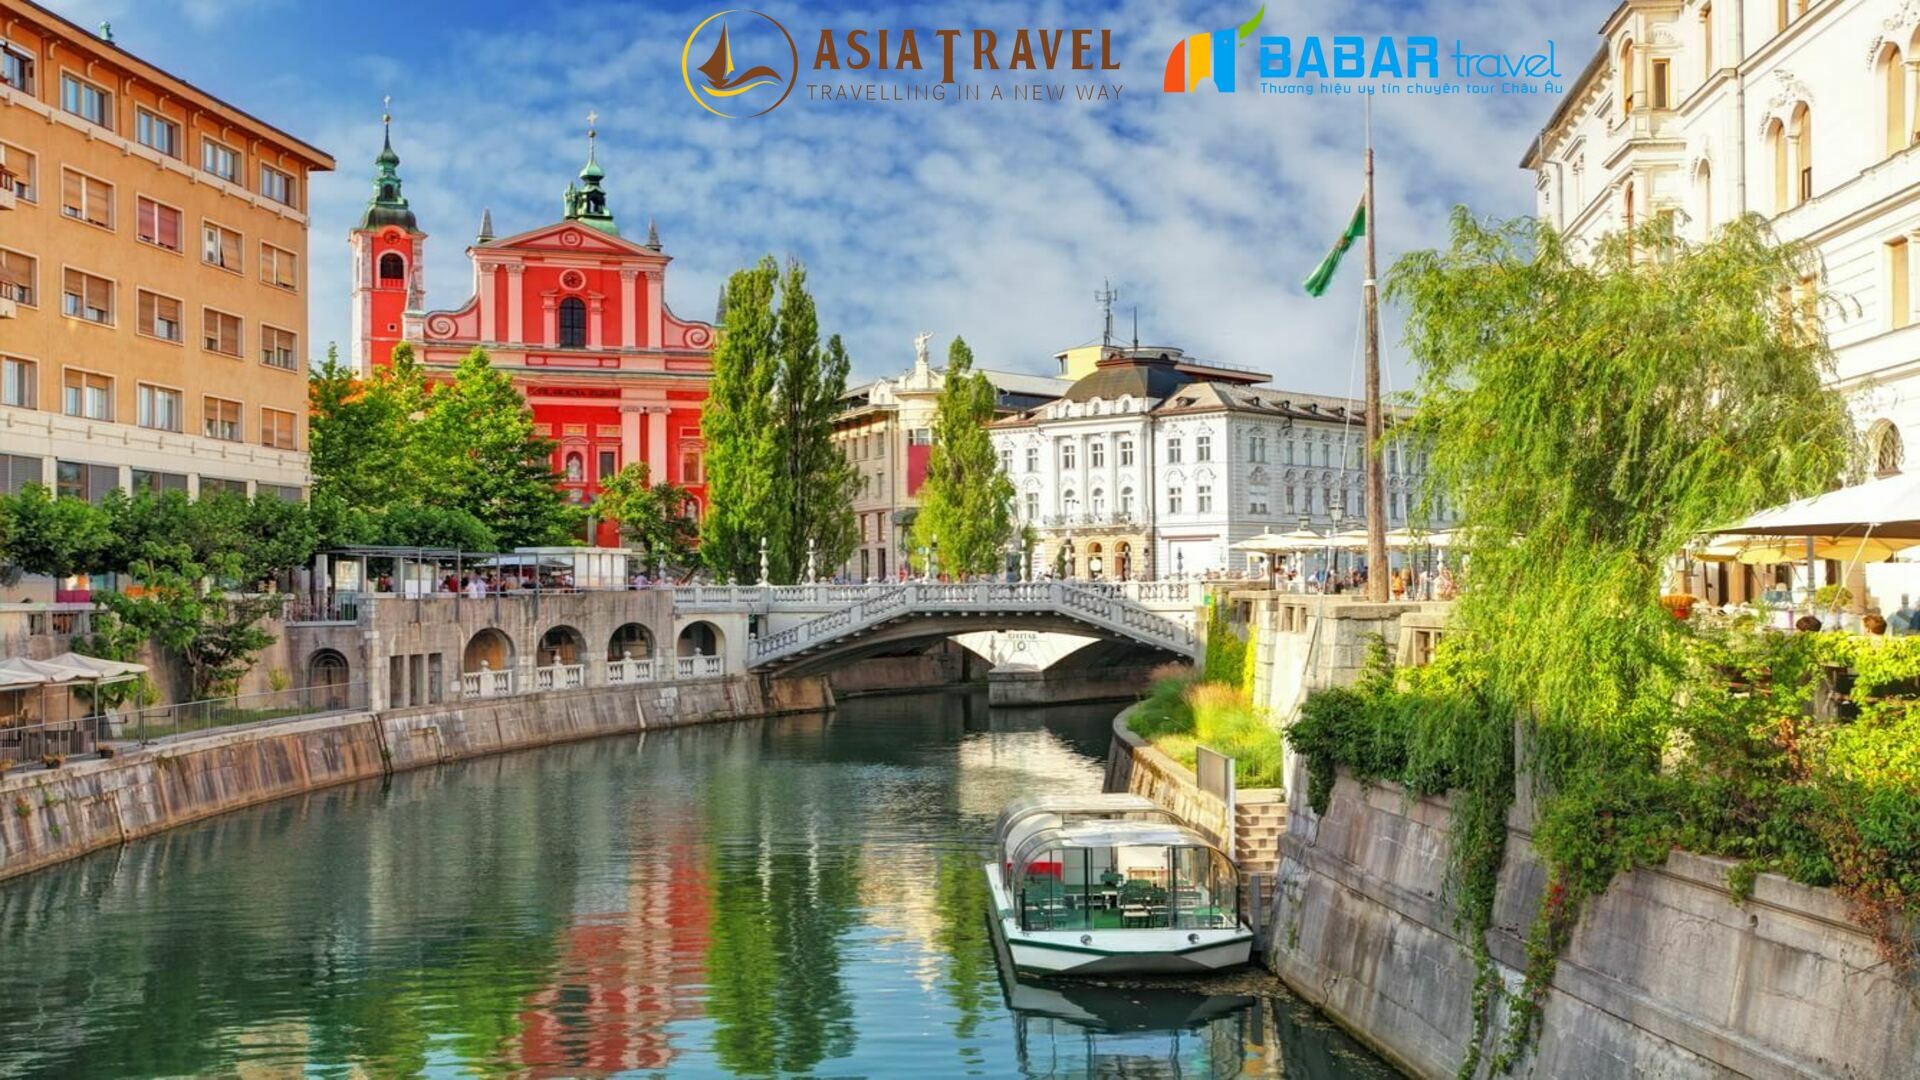 Tour du lịch Tây Nam Âu của Babartravel ấn tượng